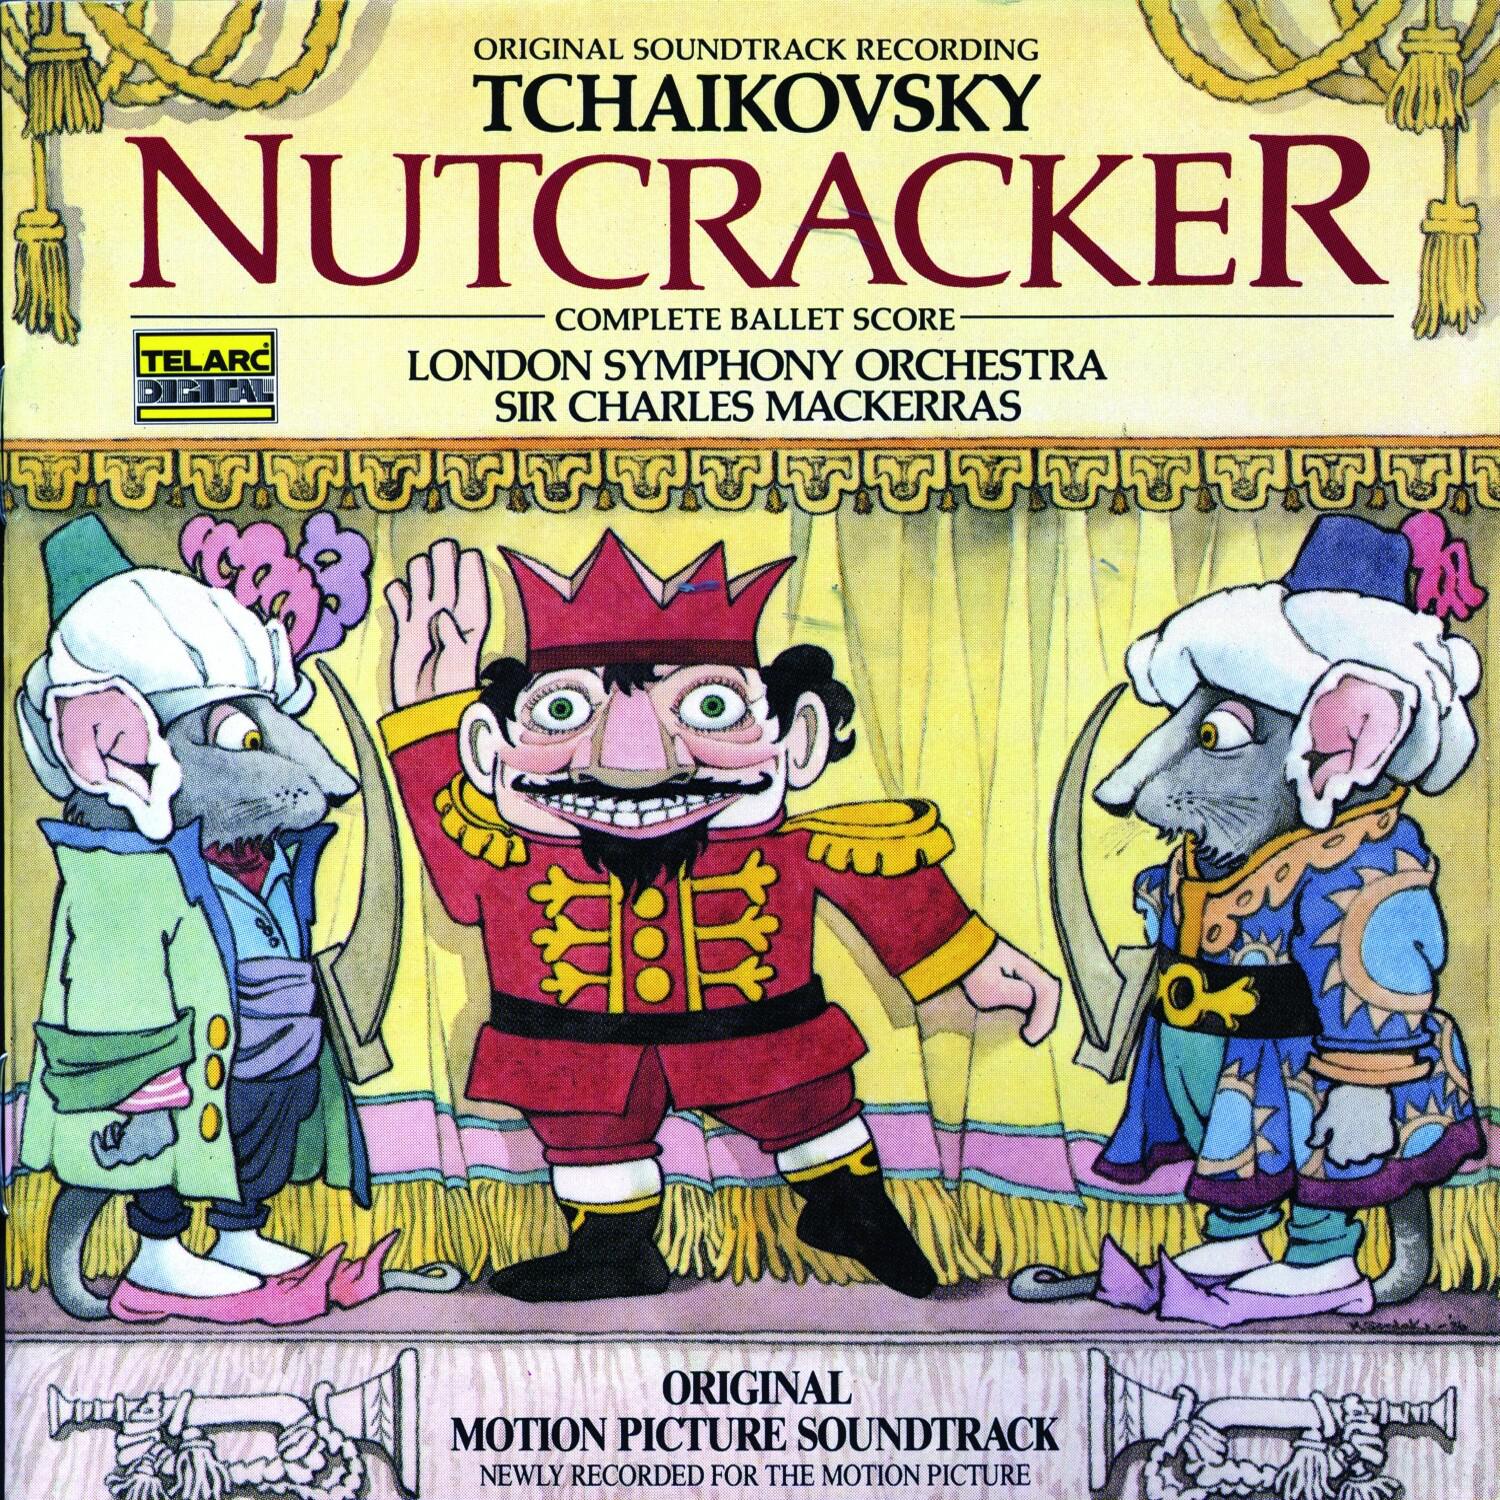 Nutcracker: Act I, Scene 6: The Magic Spell Begins